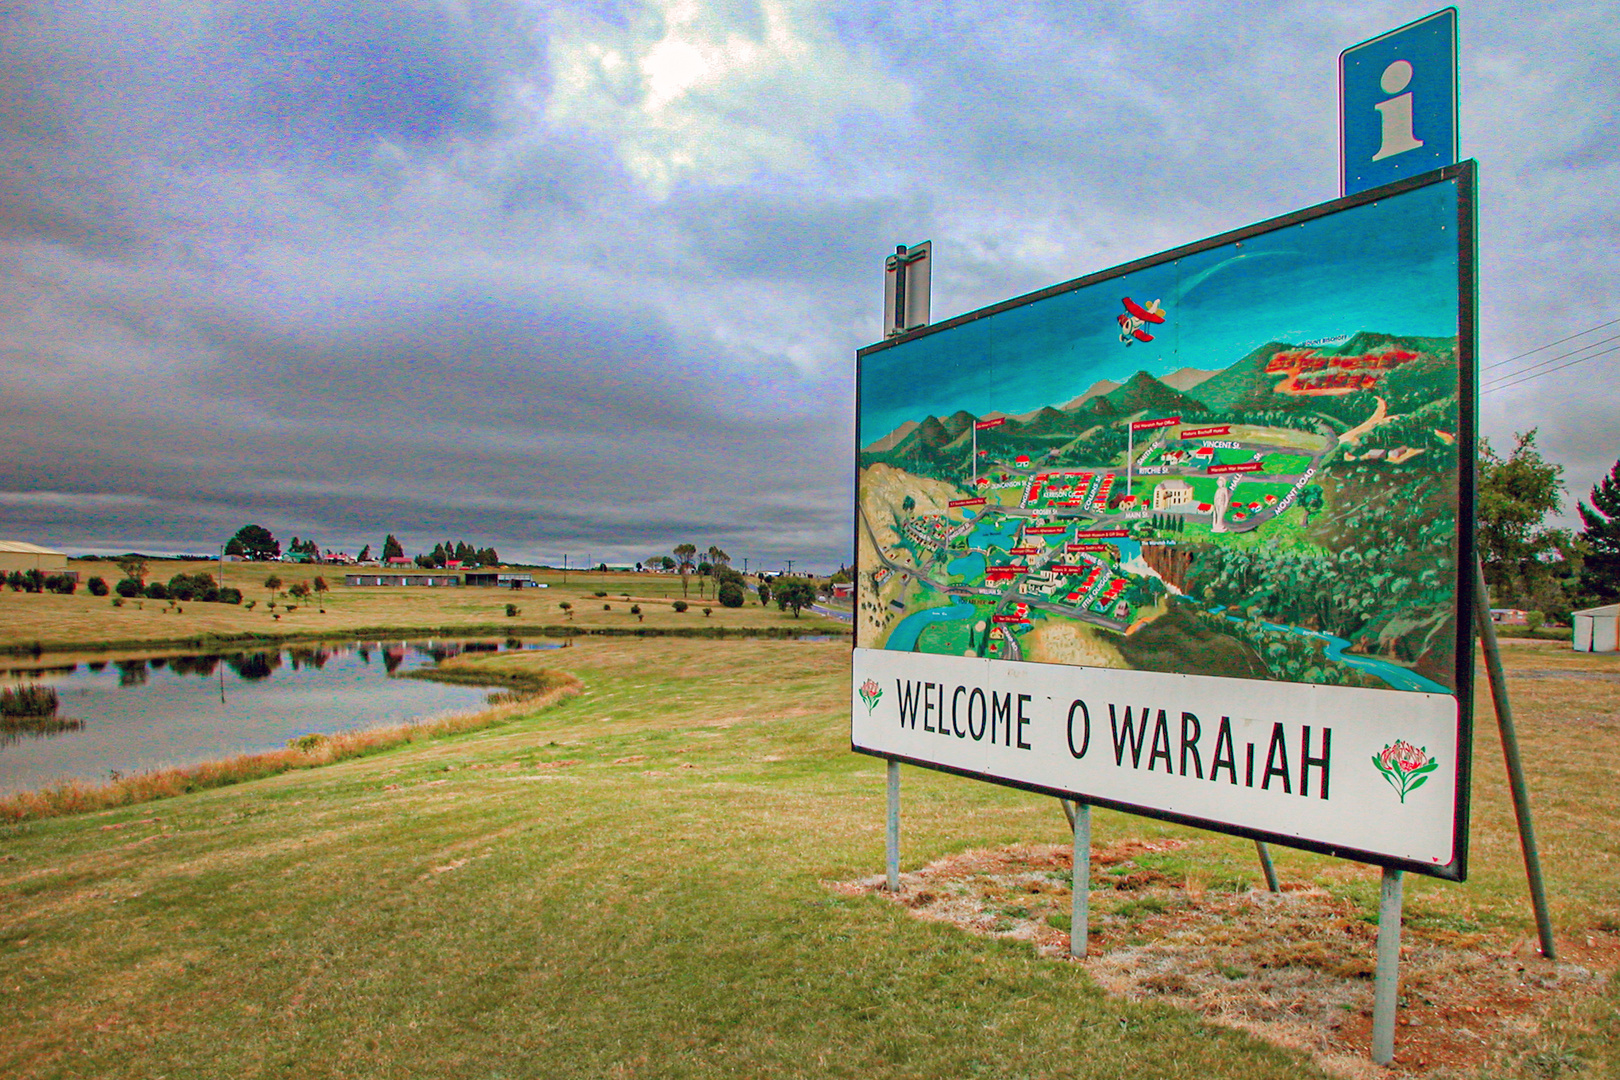 Arriving Waratah